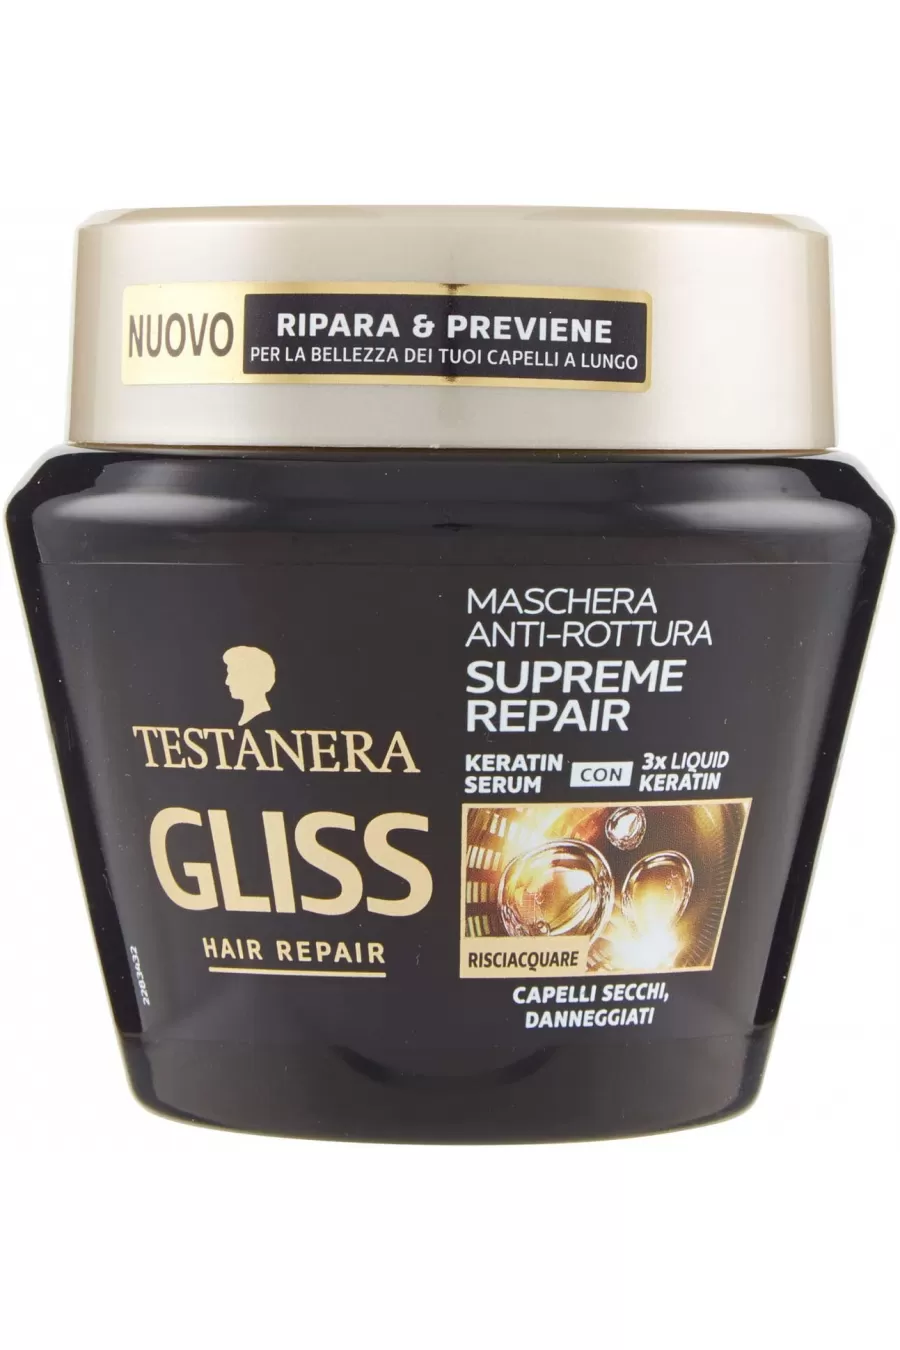 تهیه شده از ۹۵ درصد مواد طبیعی حاوی کراتین تغذیه کننده و تقویت کننده مو از بین برنده مو خوره SUPREME REPAIR گیلیس GLISS ماسک موی ترمیم کننده